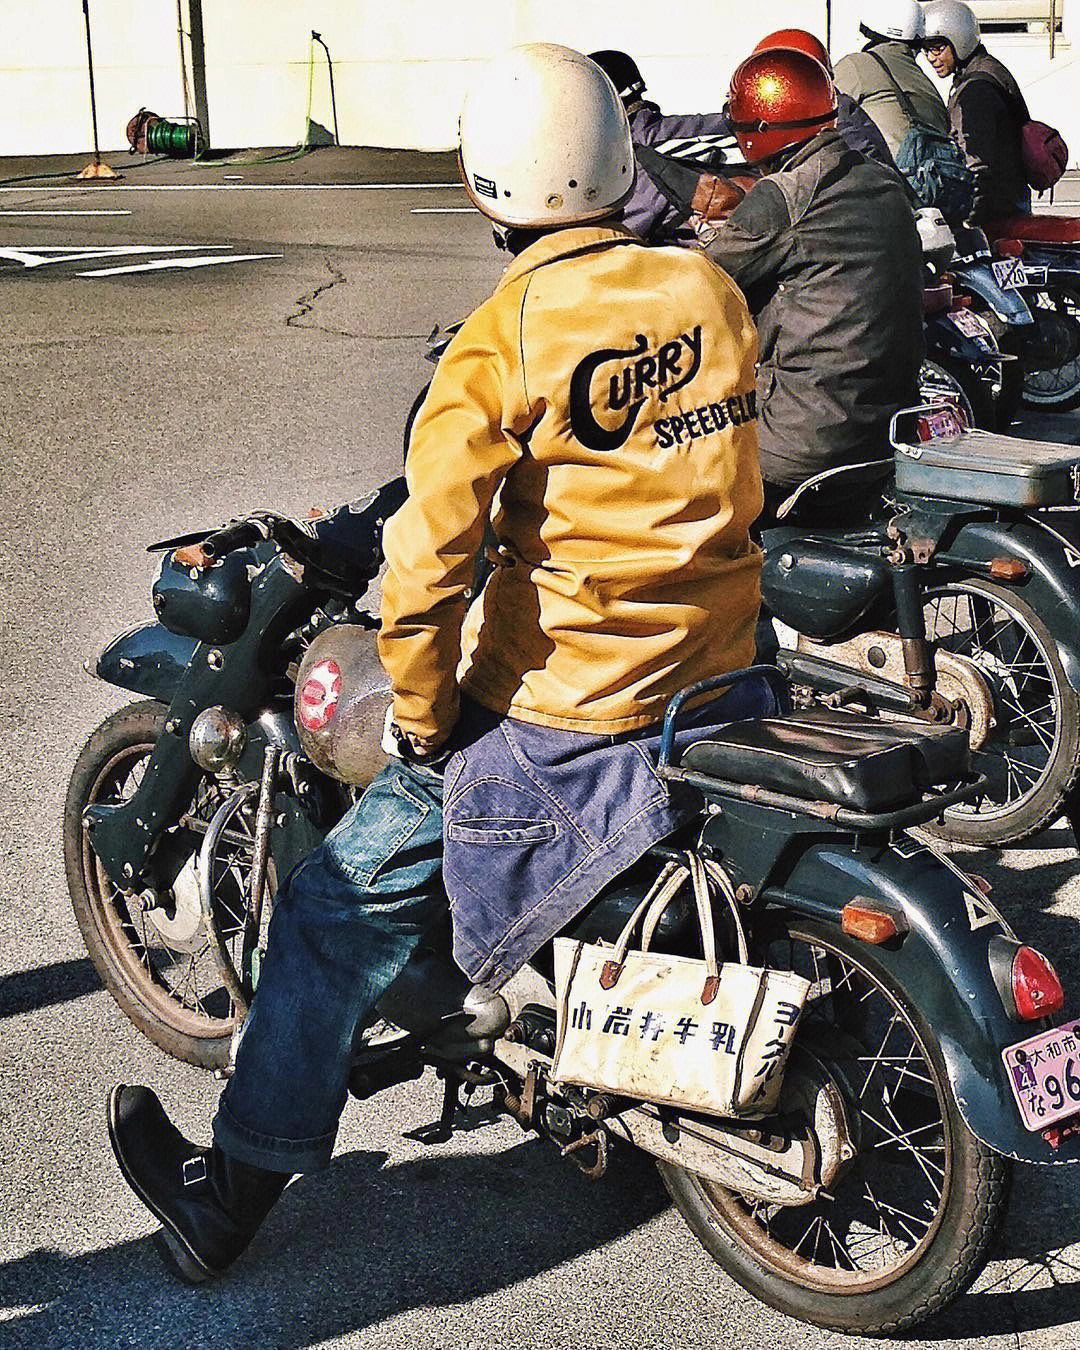 日本的摩托车牌照图片